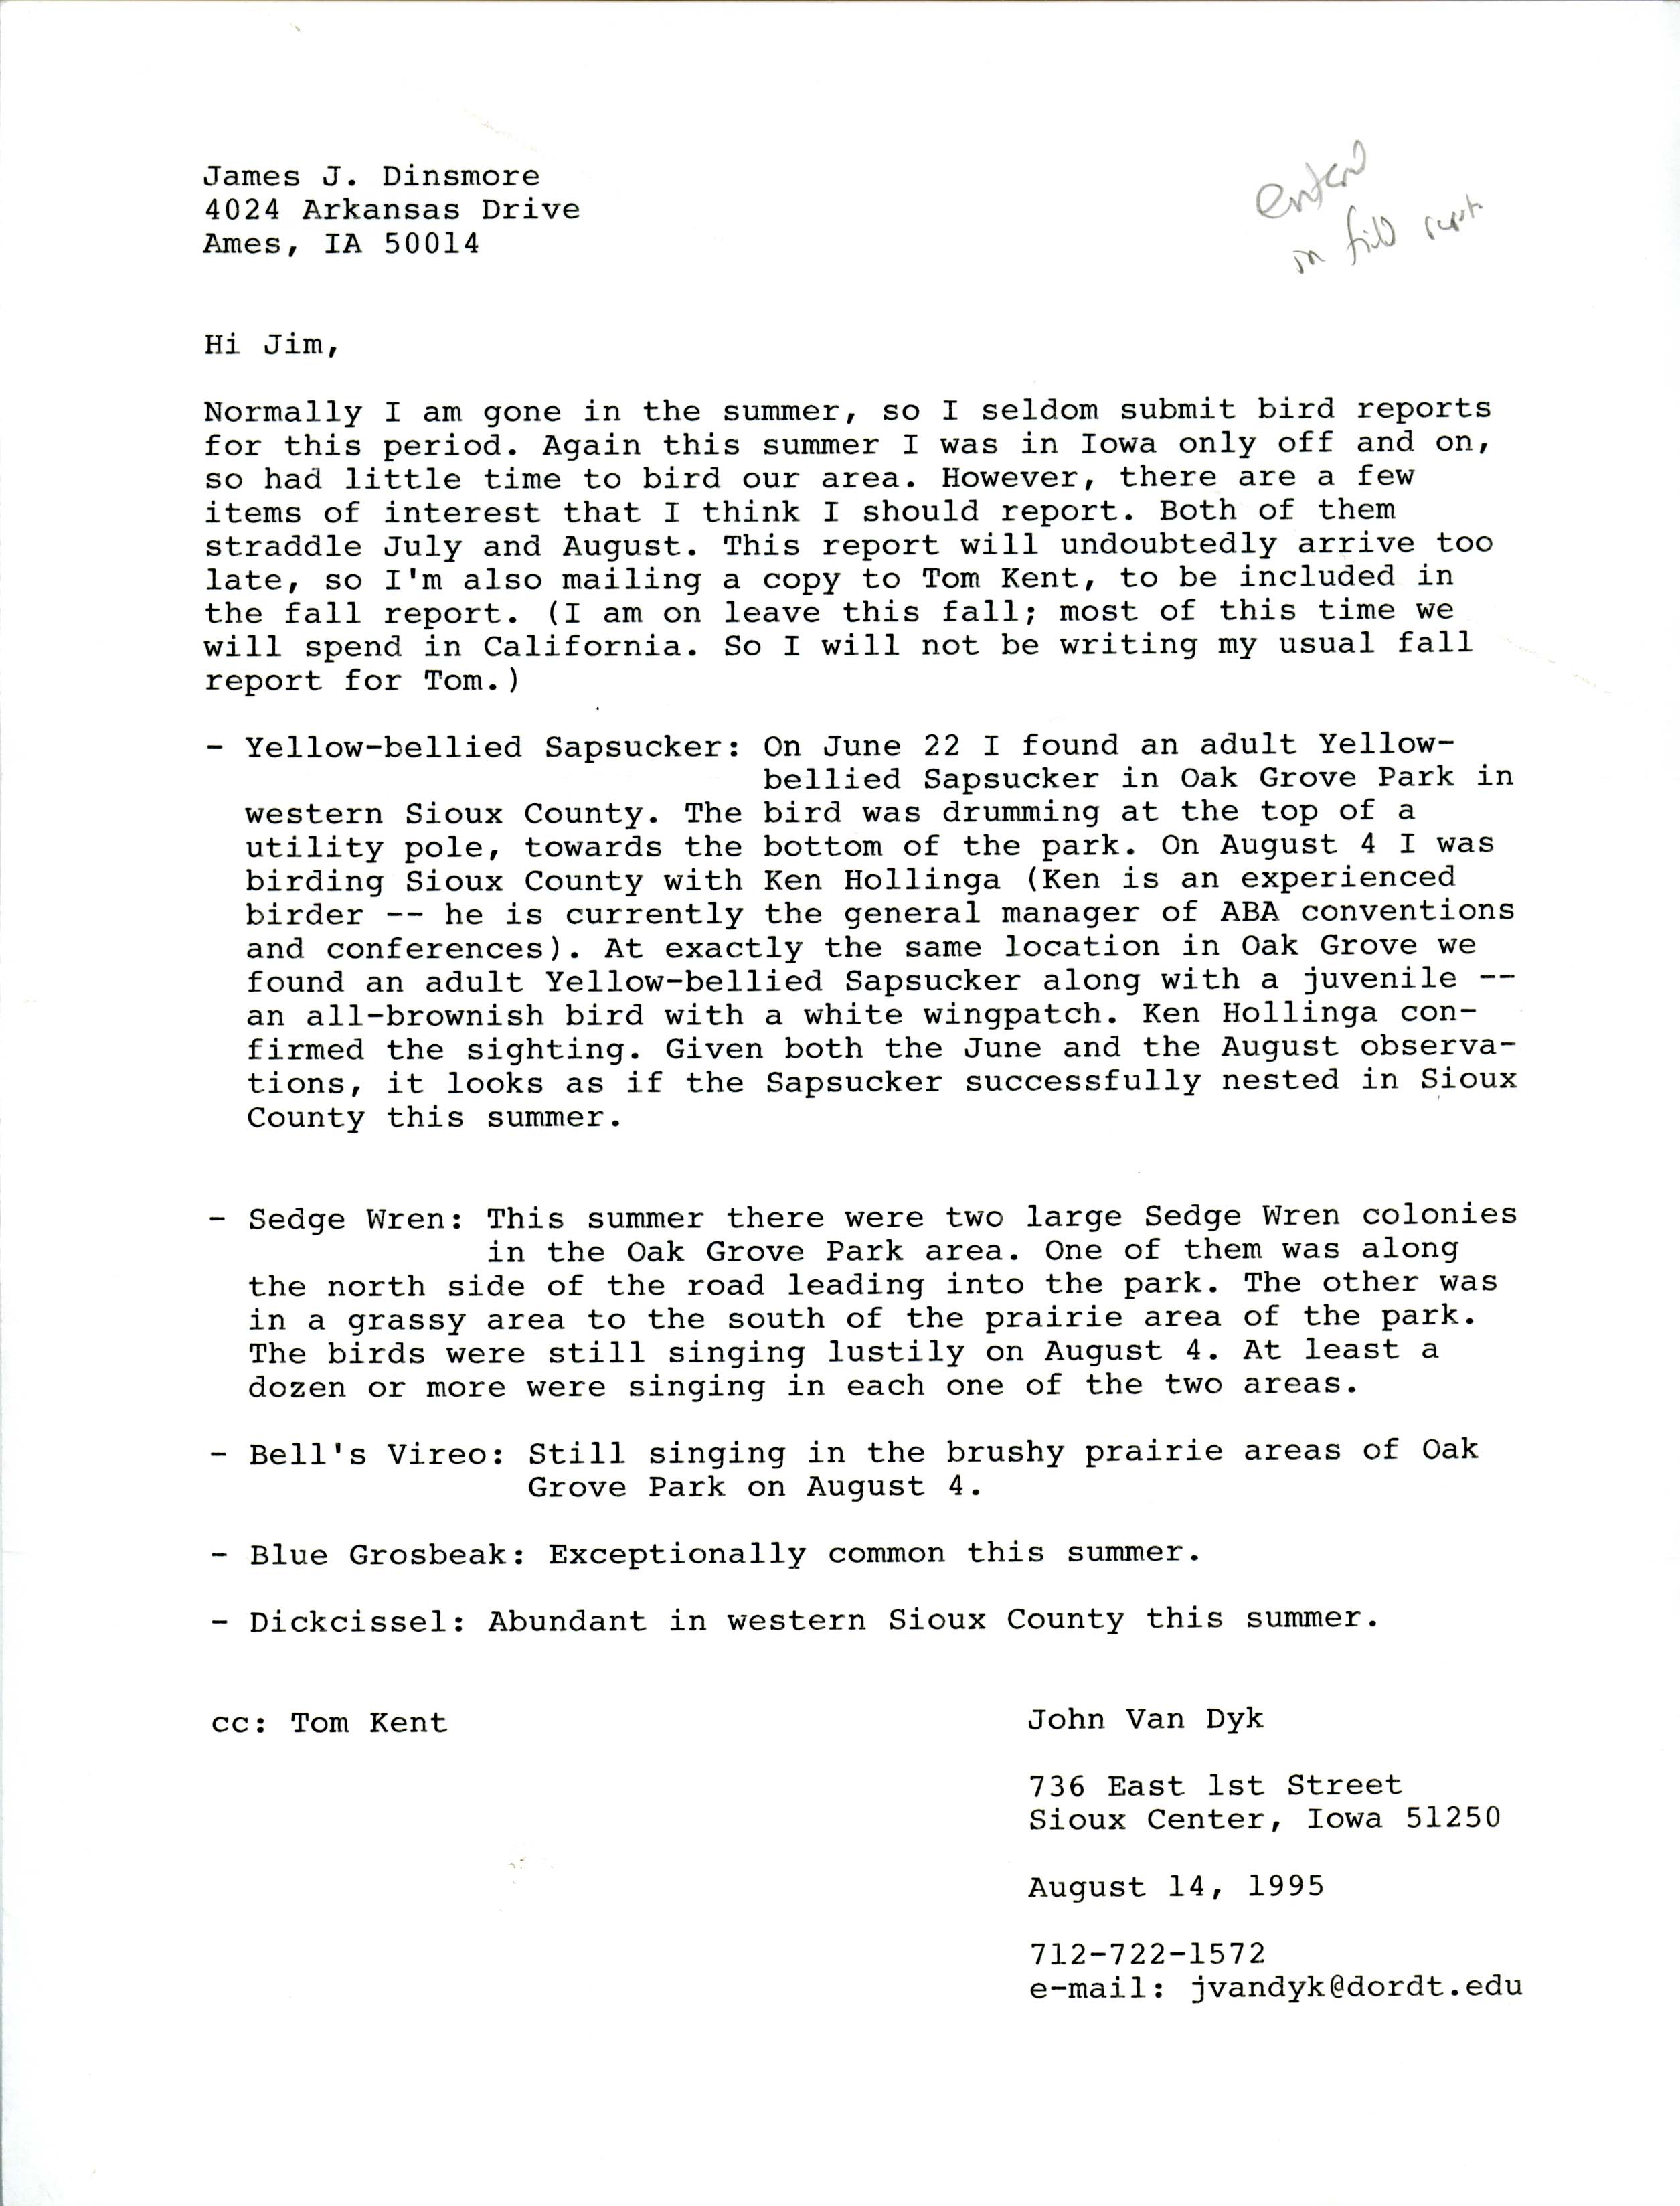 John Van Dyk letter to Jim Dinsmore regarding summer sightings, August 14, 1995